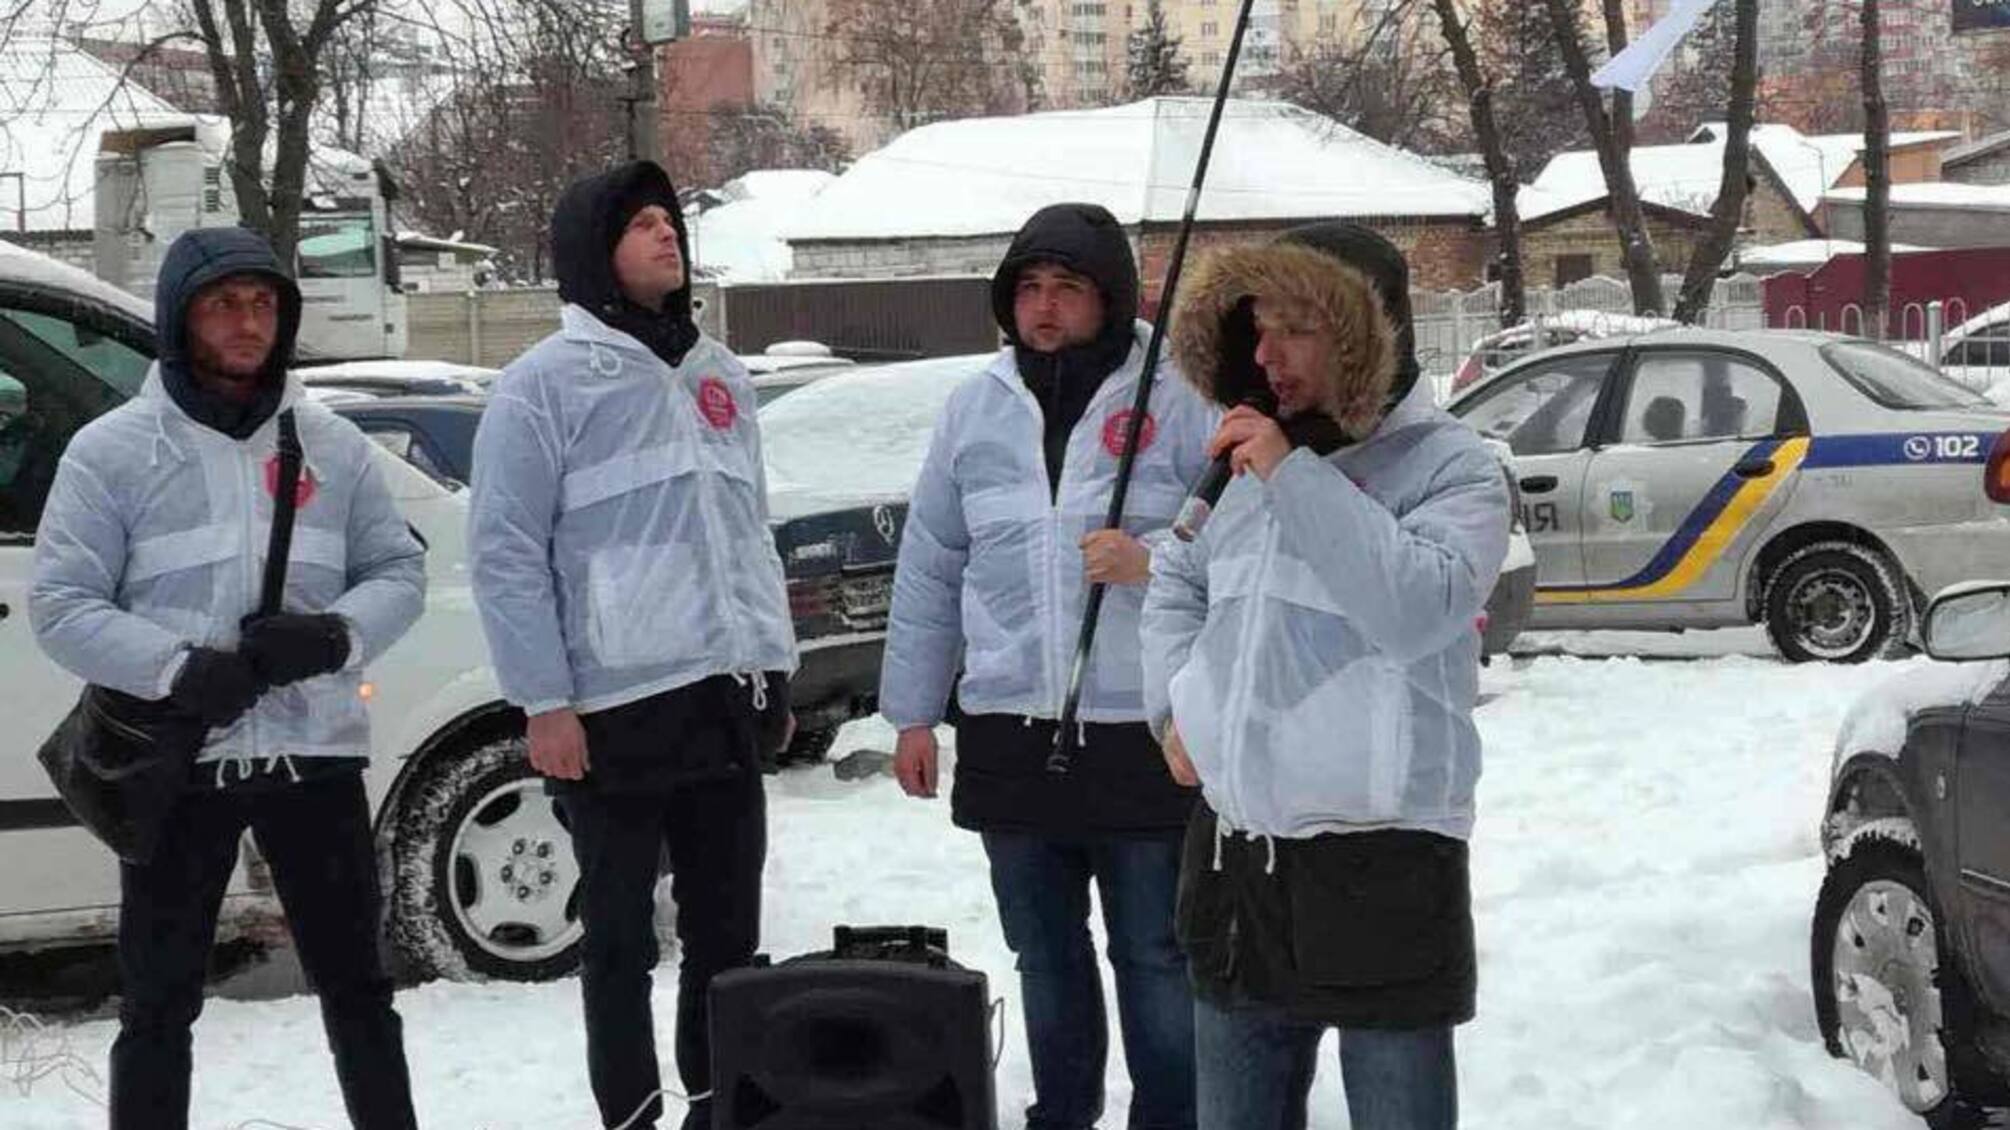 Справу піщаних браконьєрів із Пухівки на Київщині передали до суду